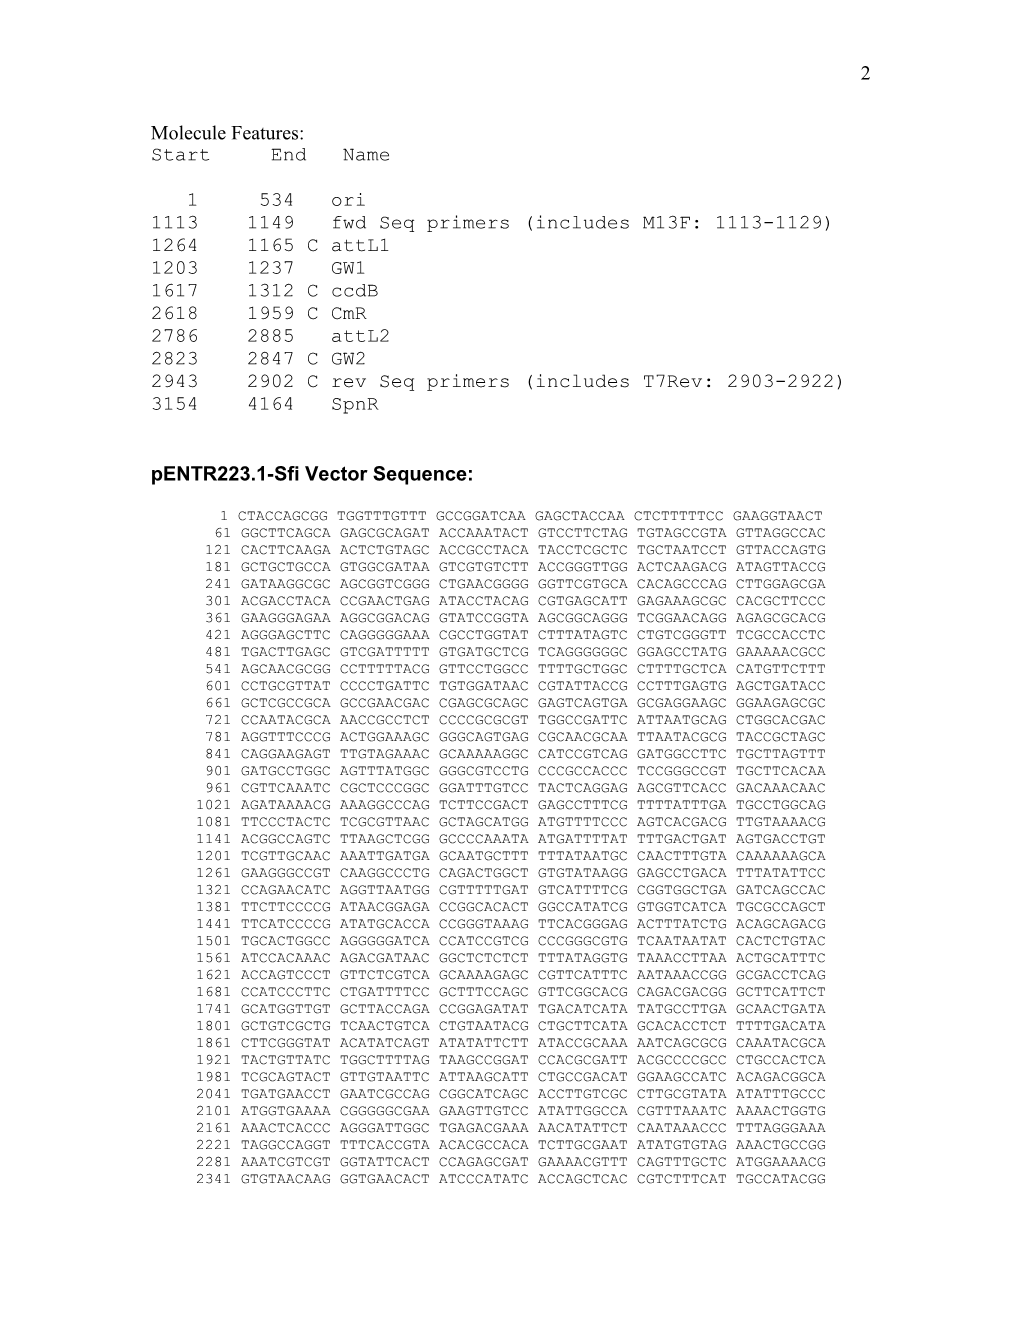 Pentr223.1-Sfi (4311 Bps DNA Circular)